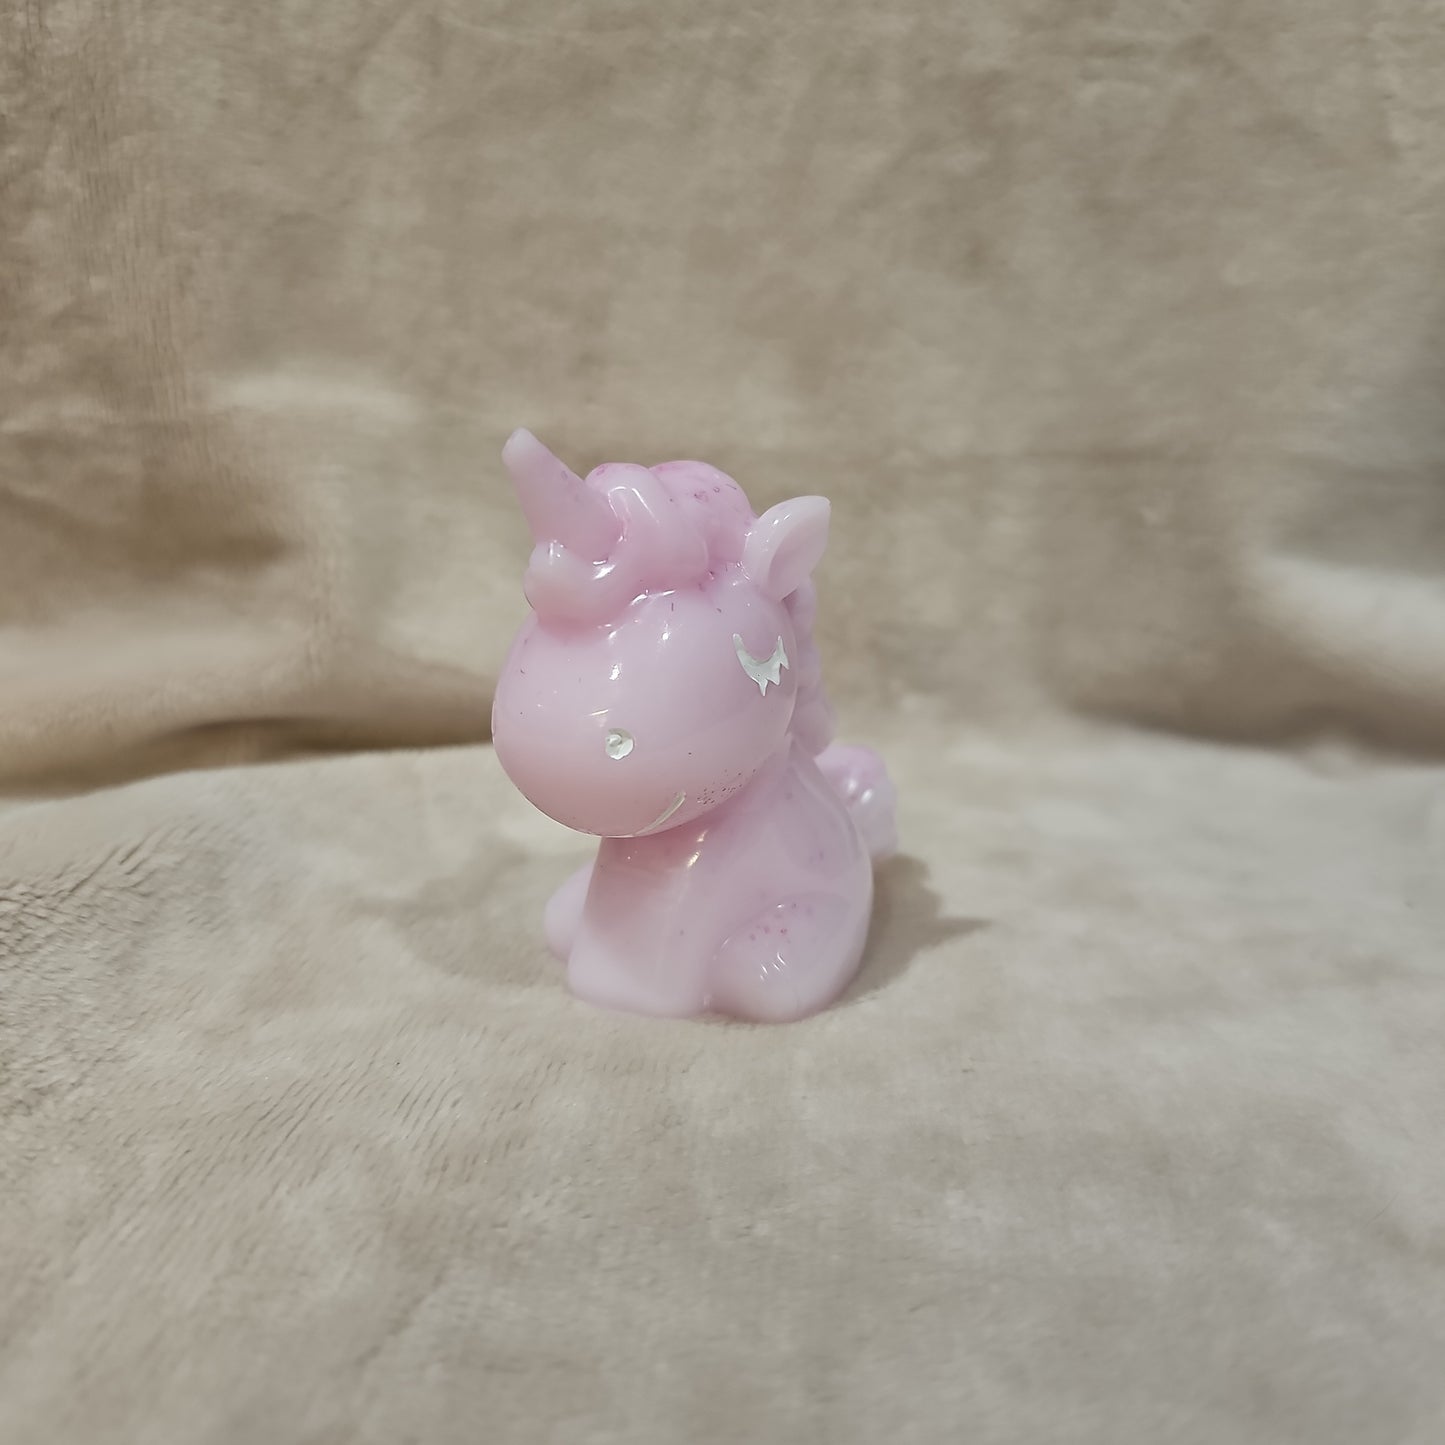 Figurine-Pink Unicorn